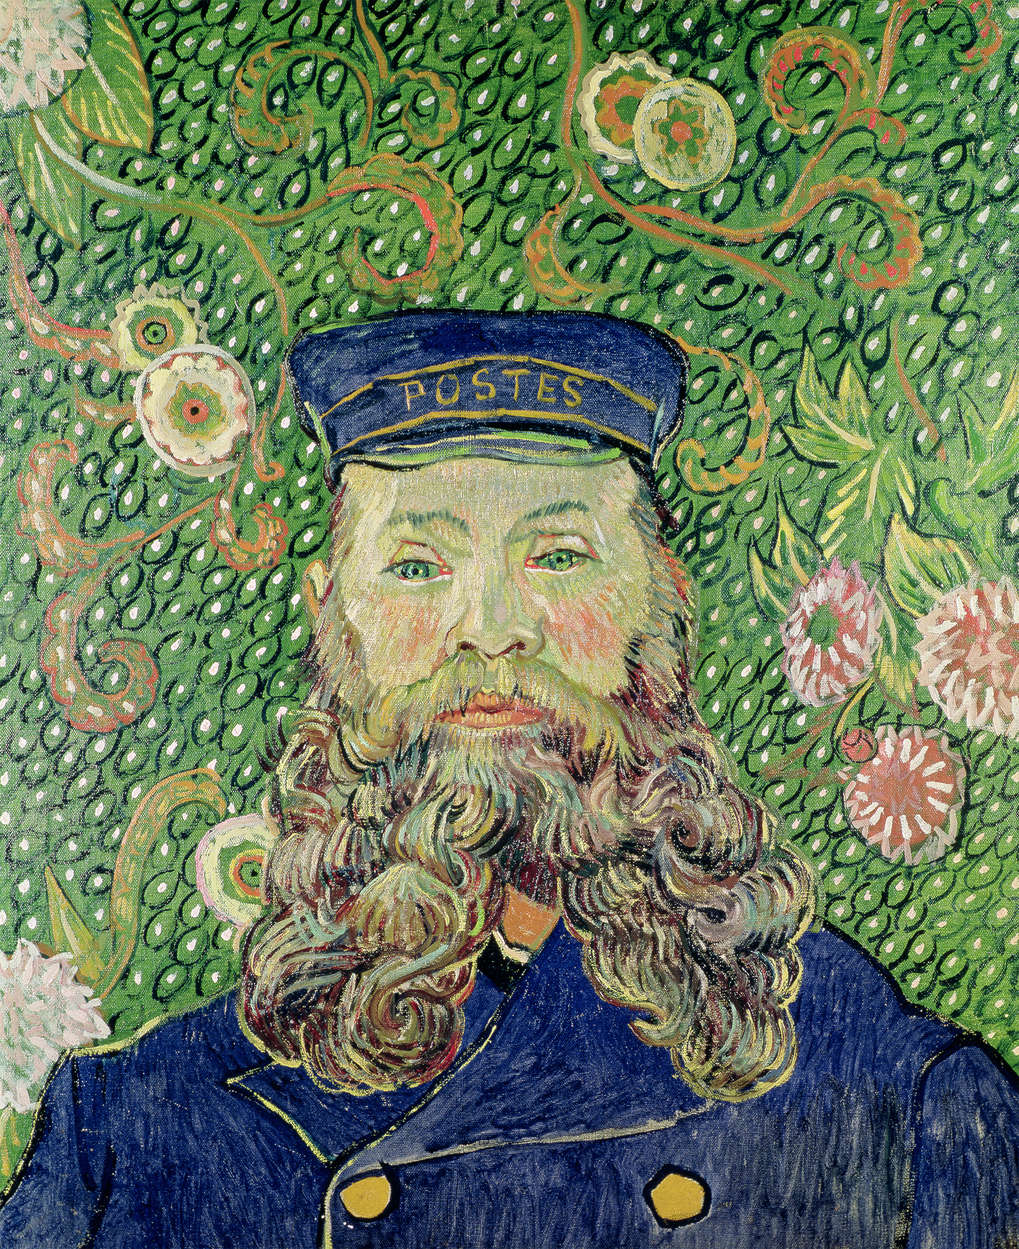             Portret van de postbode Joseph Roulin" muurschildering van Vincent van Gogh
        